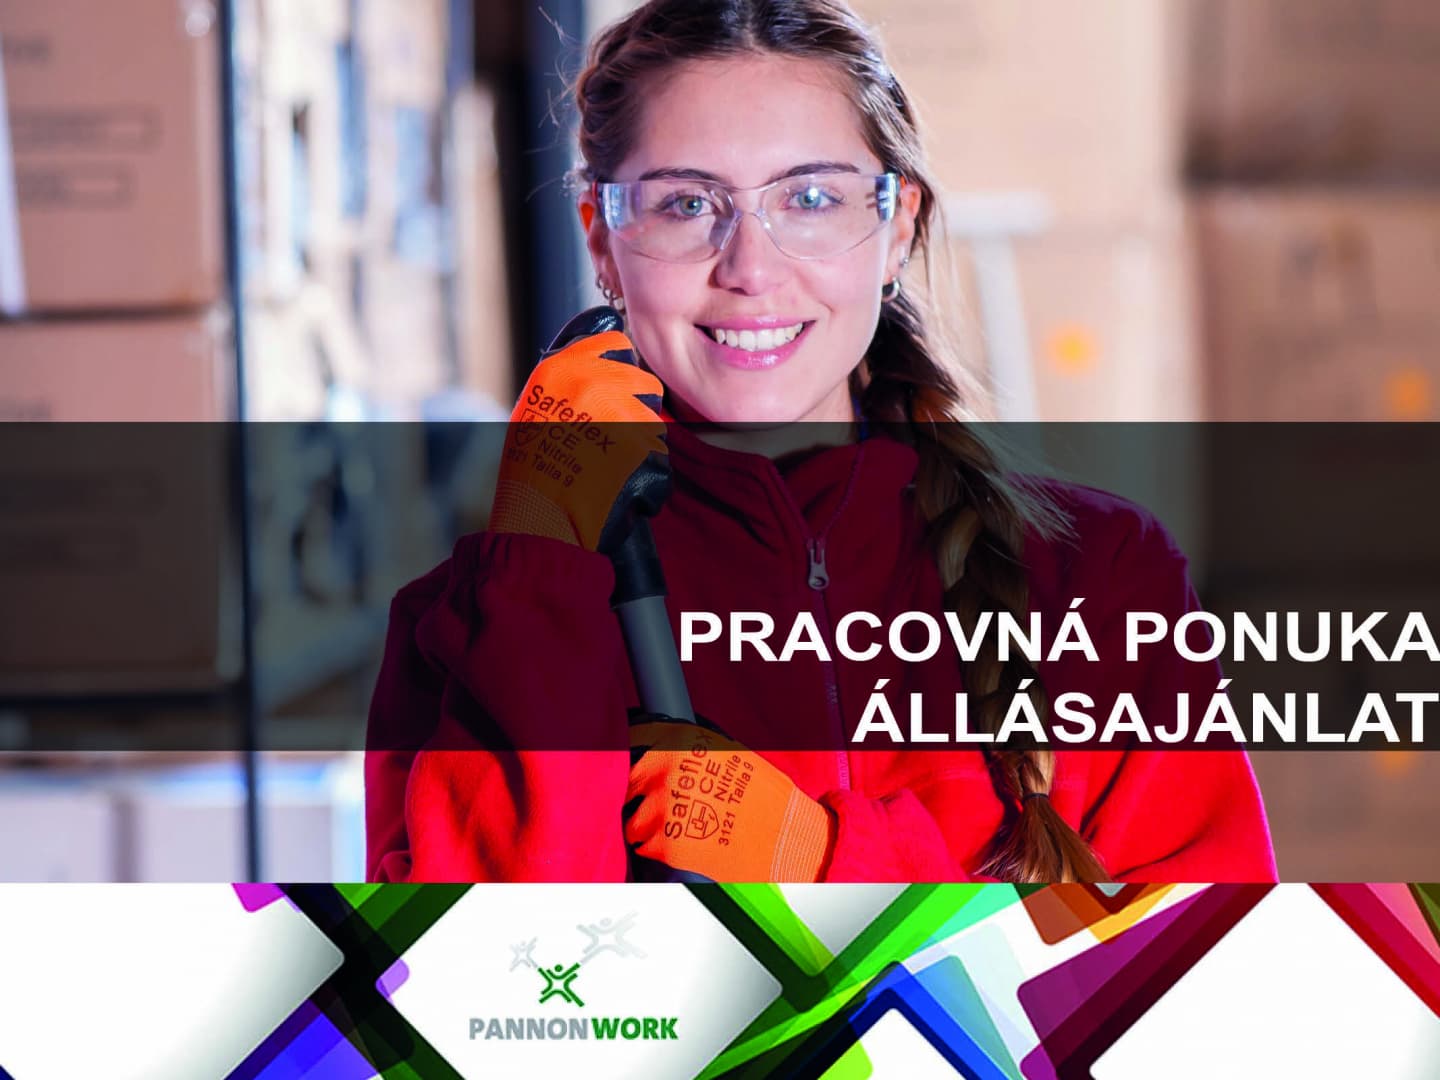 PANNON – WORK SLOVAKIA - A legtöbb munkalehetőség egy helyen!